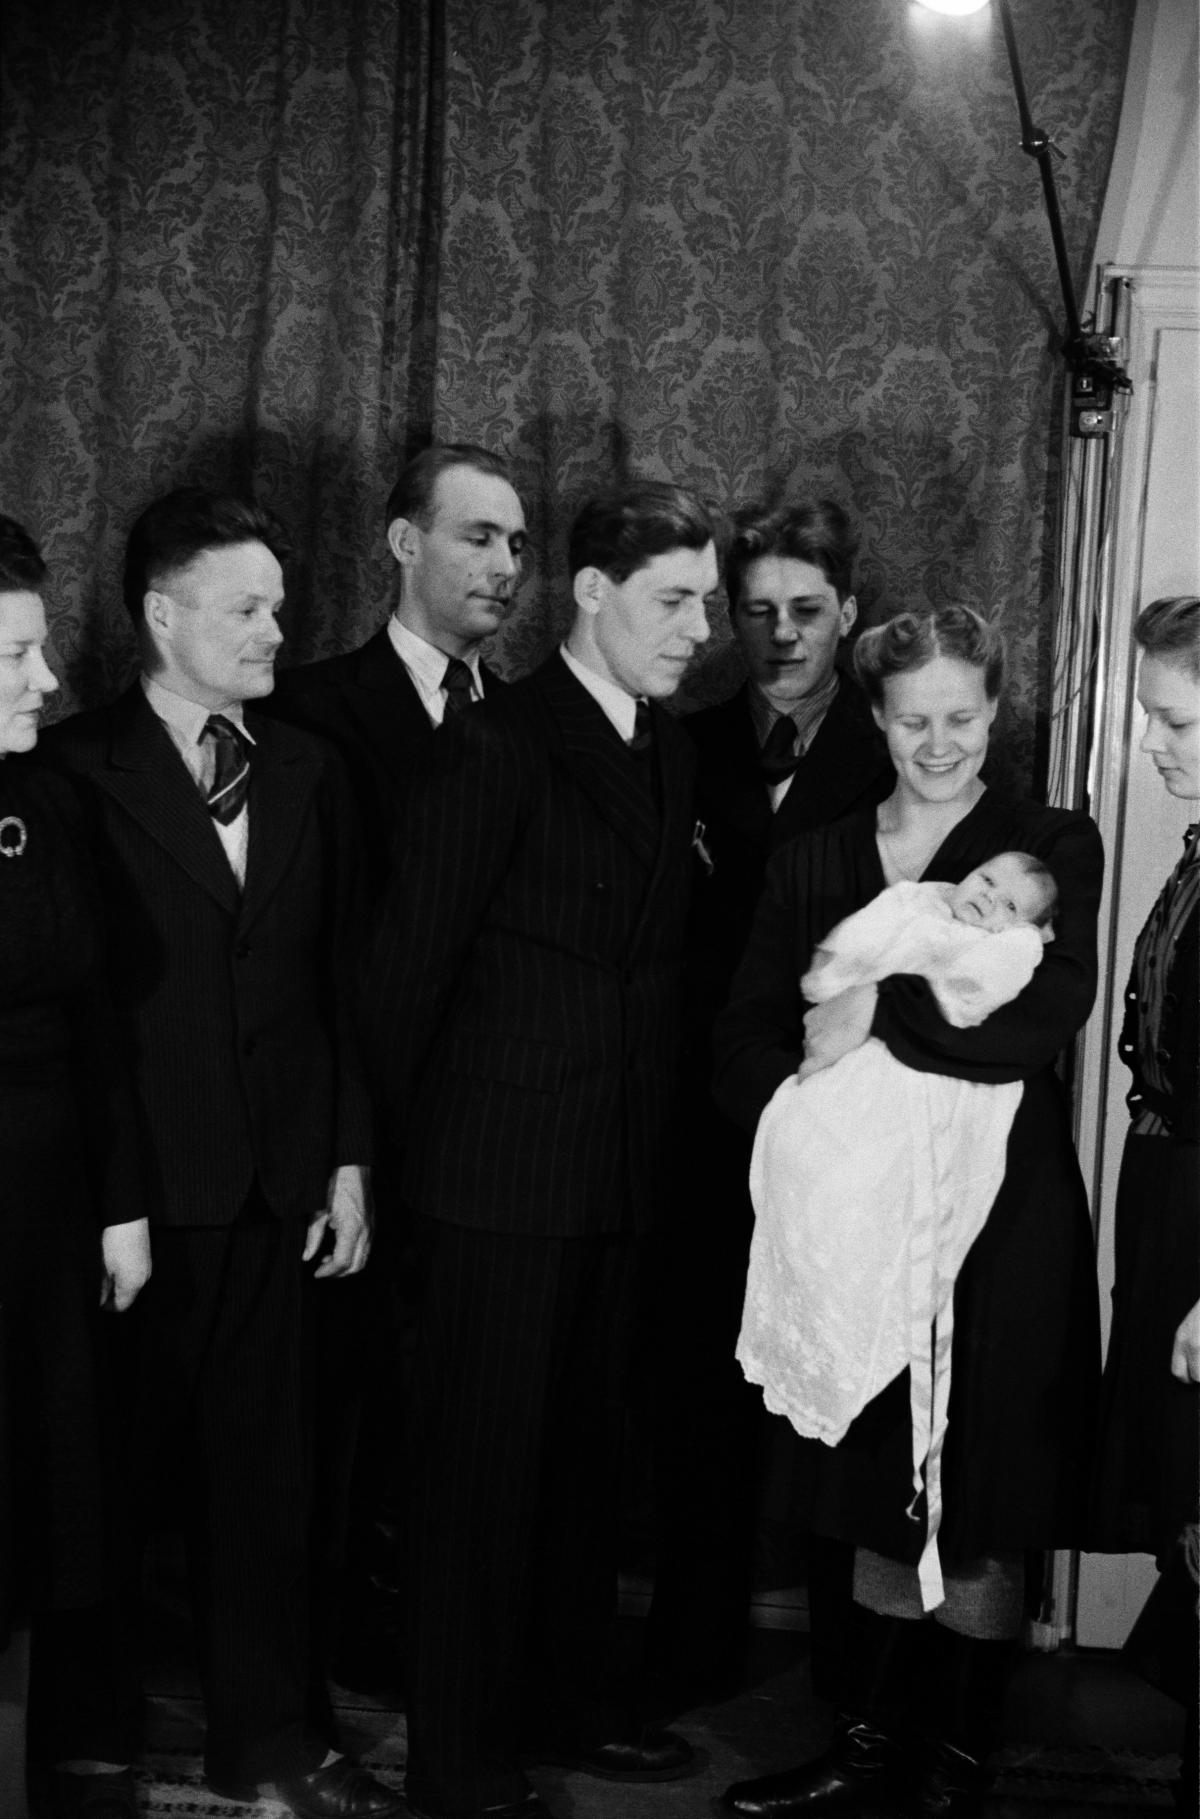 Syntyvyys kääntyi nousuun vuoden 1945 lopulla. Kuvaaja: Helsingin kaupunginmuseo / Väinö Kannisto